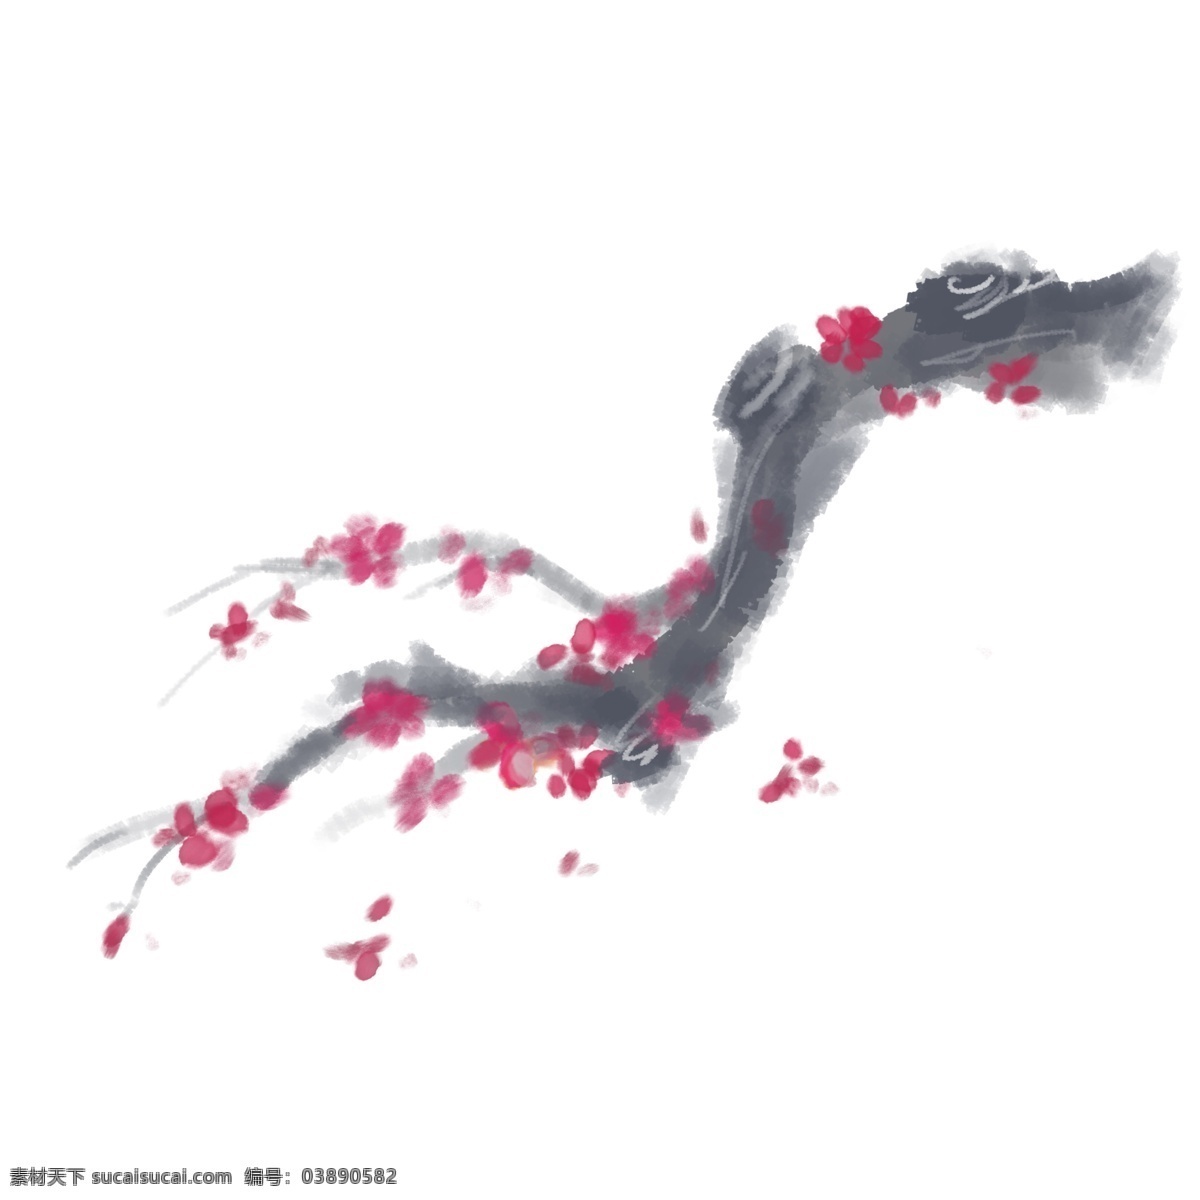 腊梅 梅花 水墨 插图 招贴 商业海报 淡雅 水彩 手绘 花瓣 植物 红色 树枝 枝干